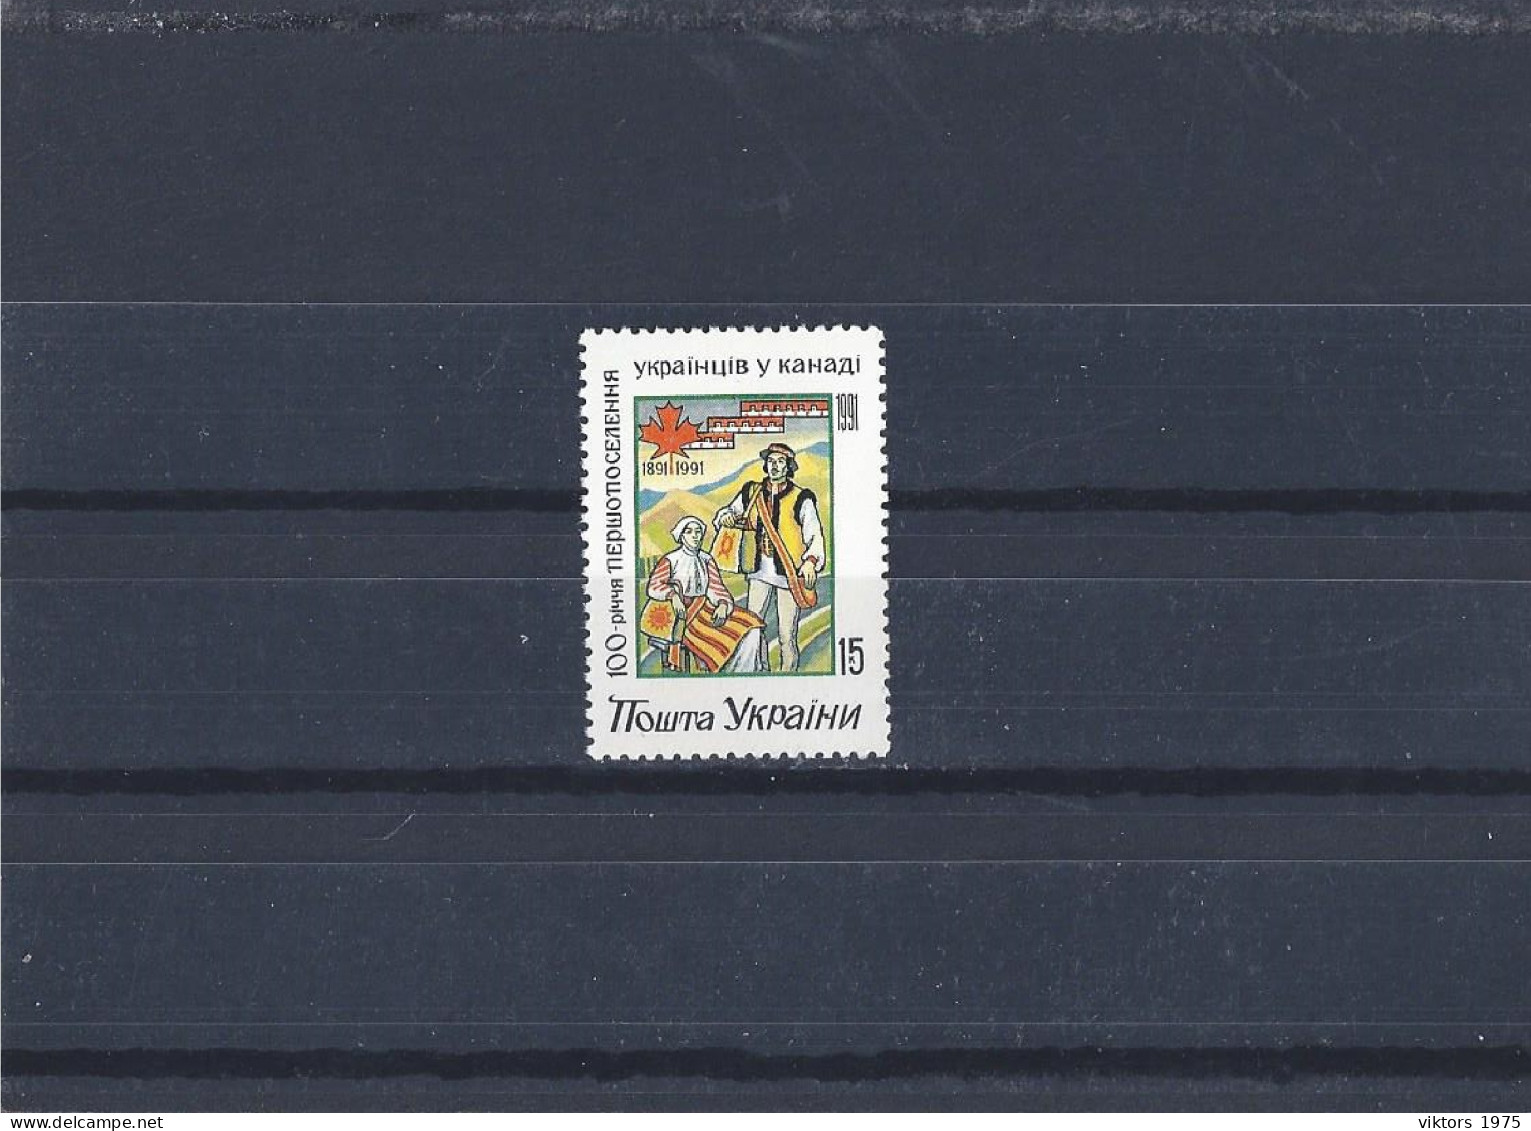 MNH Stamp Nr.72 In MICHEL Catalog - Ukraine